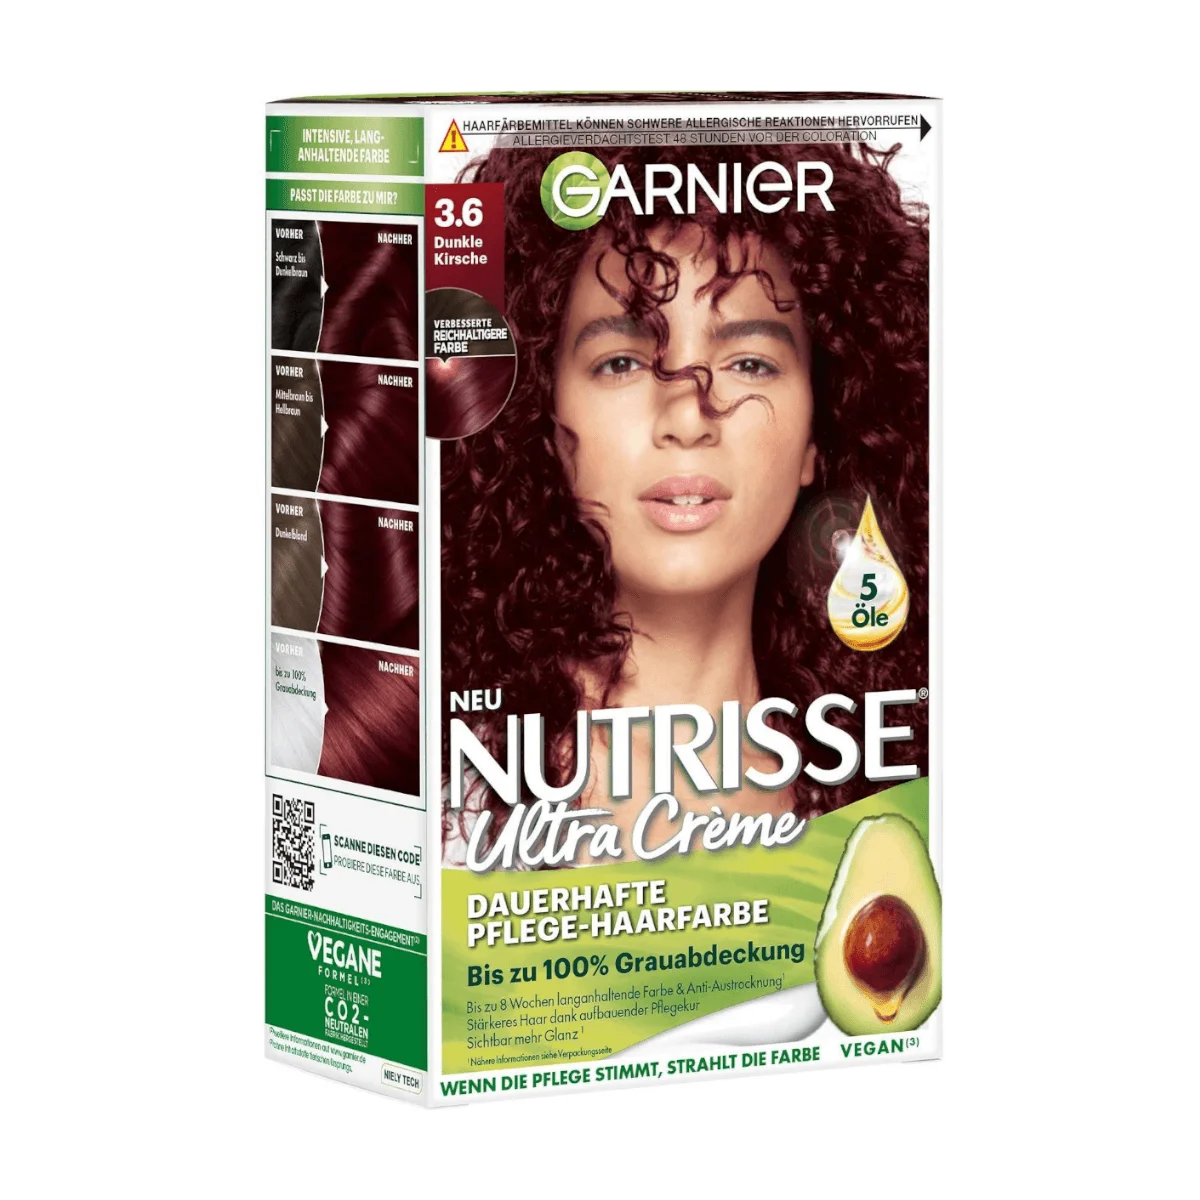 Garnier Nutrisse Ultra Creme Haarfarbe 3.6 Dunkle Kirsche, 1 Stk